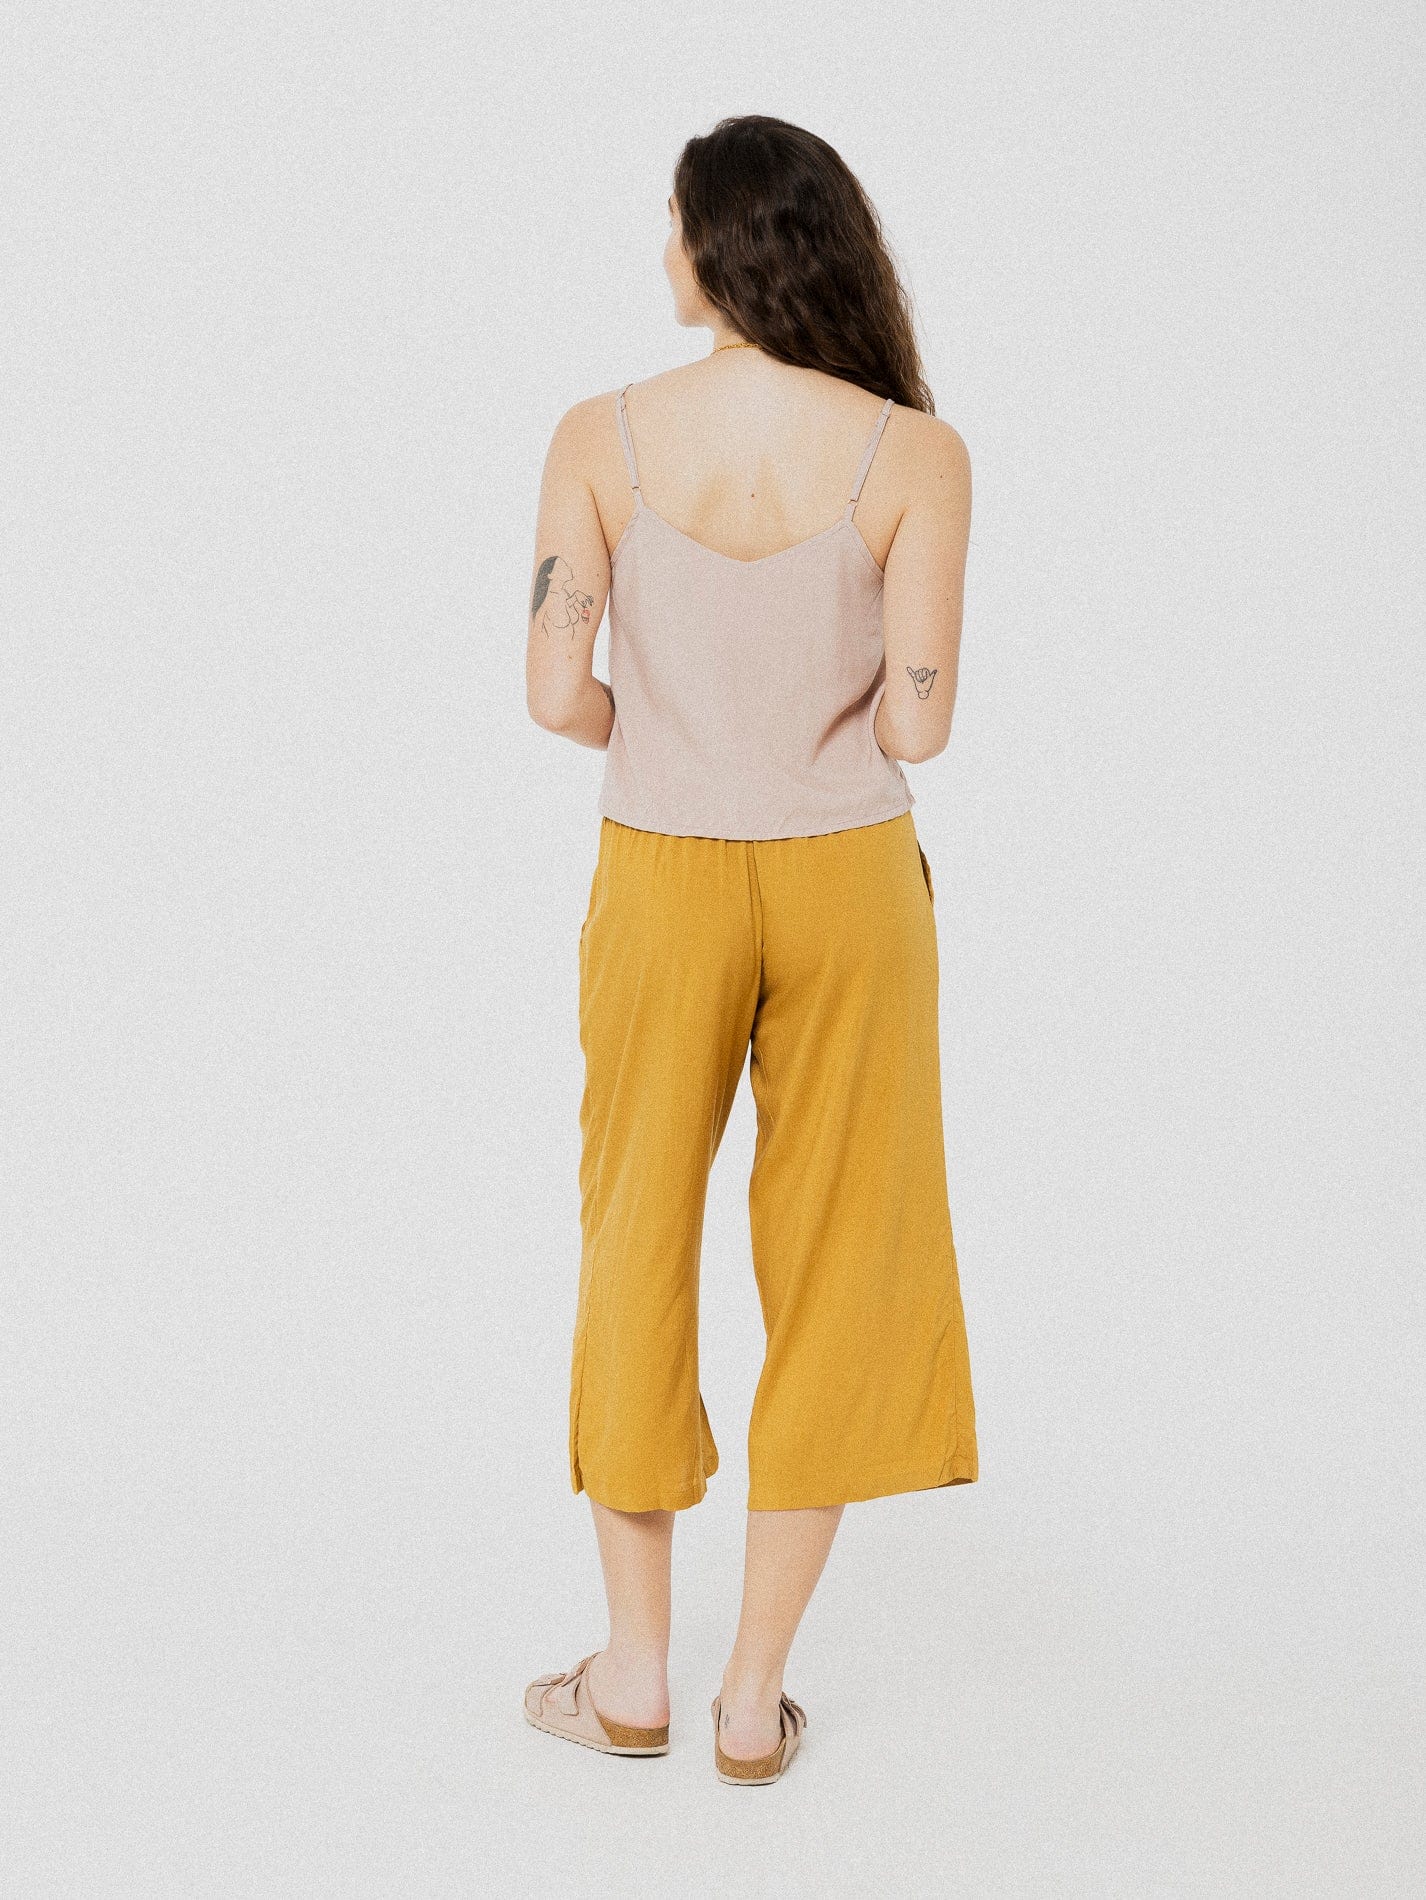 Pantalon 3/4 ample et confortable doré avec ceinture en tissu à la taille.